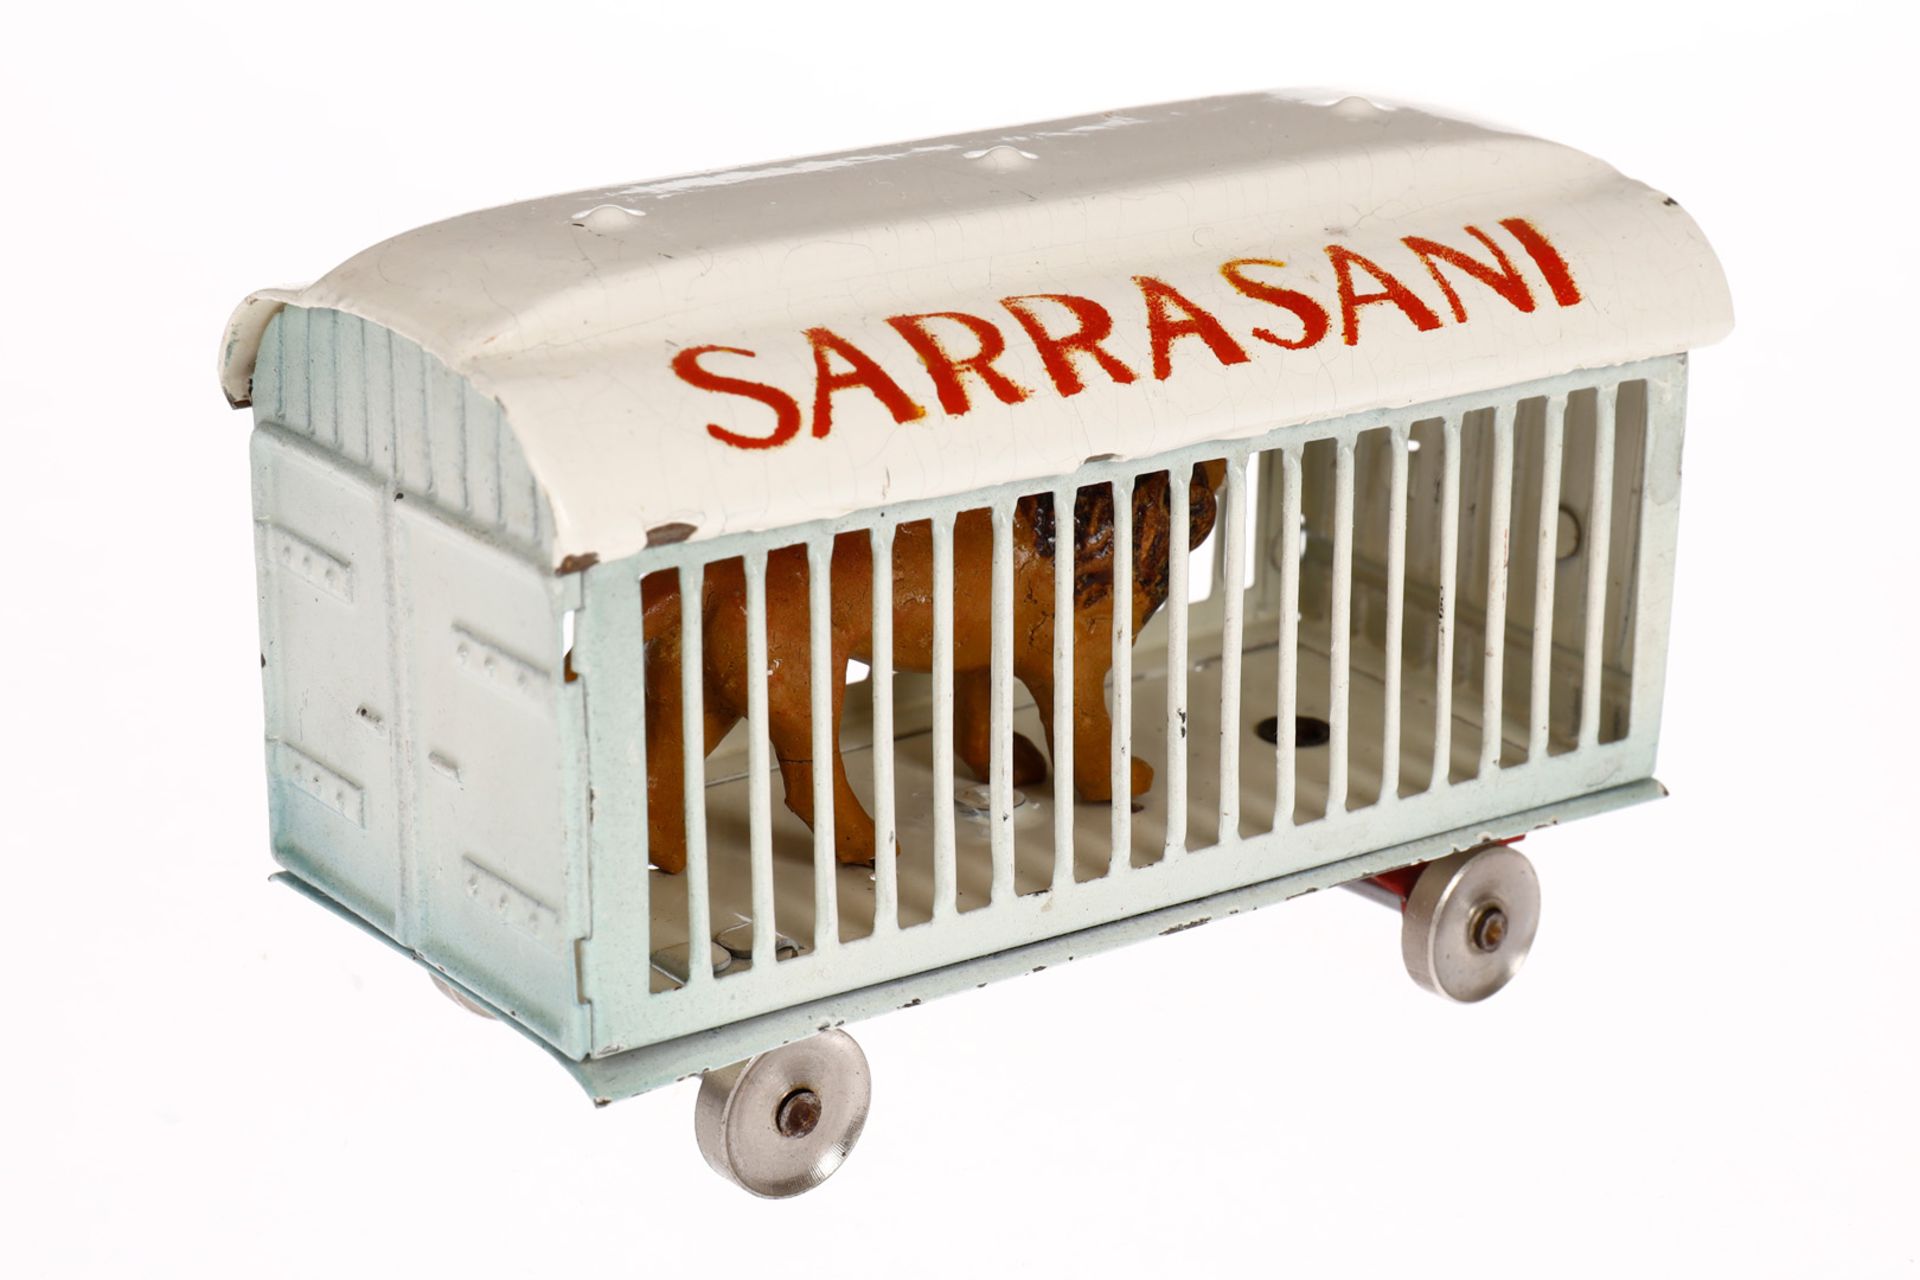 Märklin Sarrasani Tierwagen, HL, mit Löwe, LS und gealterter Lack, L 9,5, Z 2 - Bild 3 aus 4